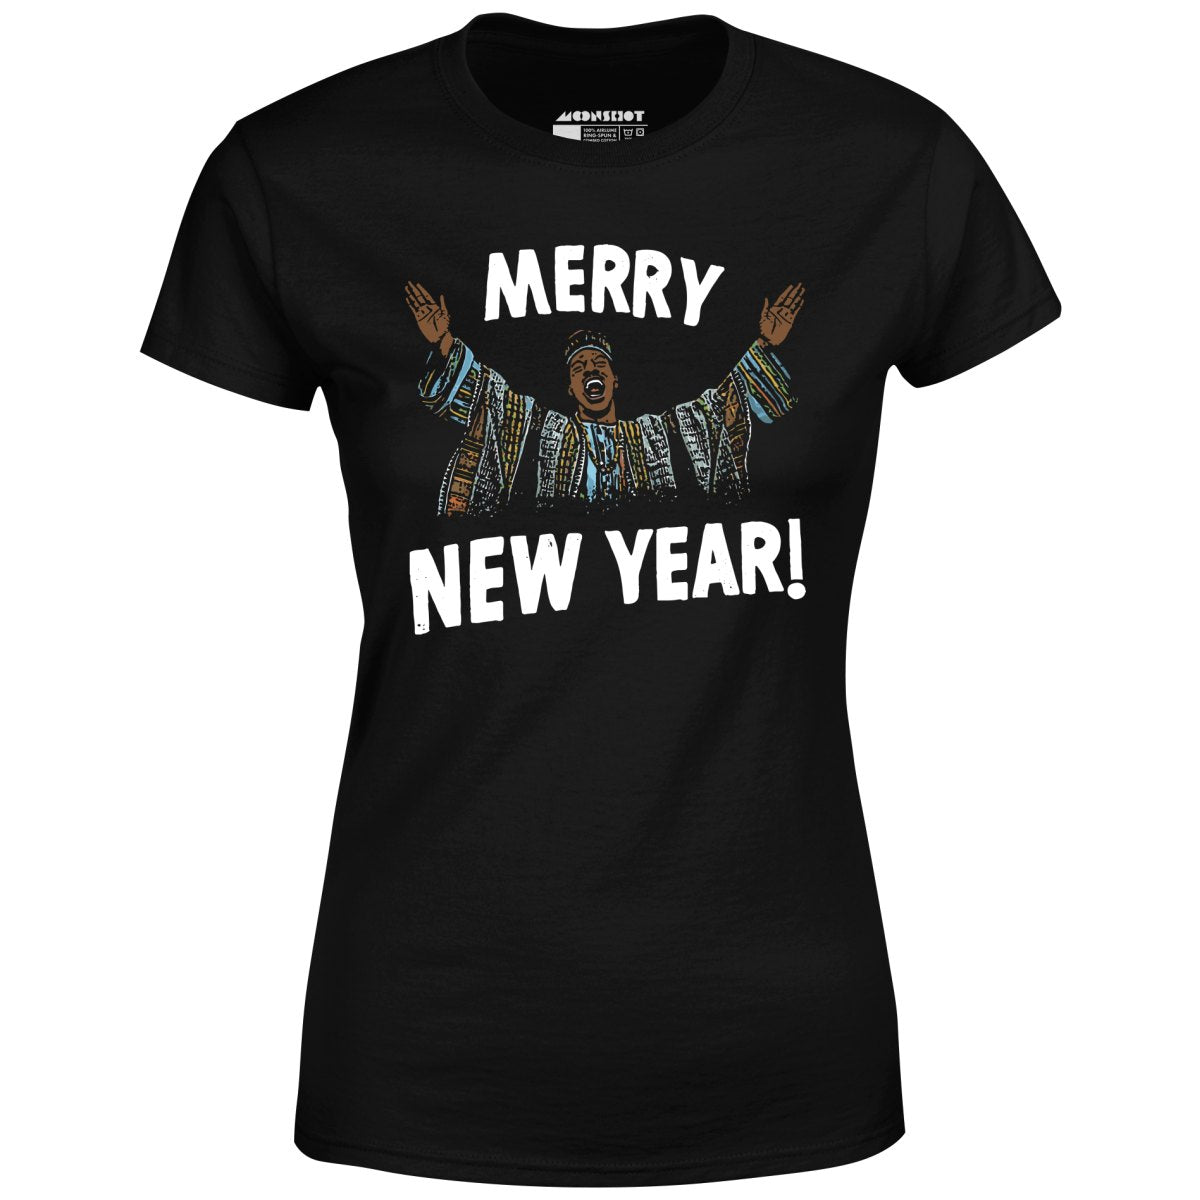 Merry New Year! - Women's T-Shirt